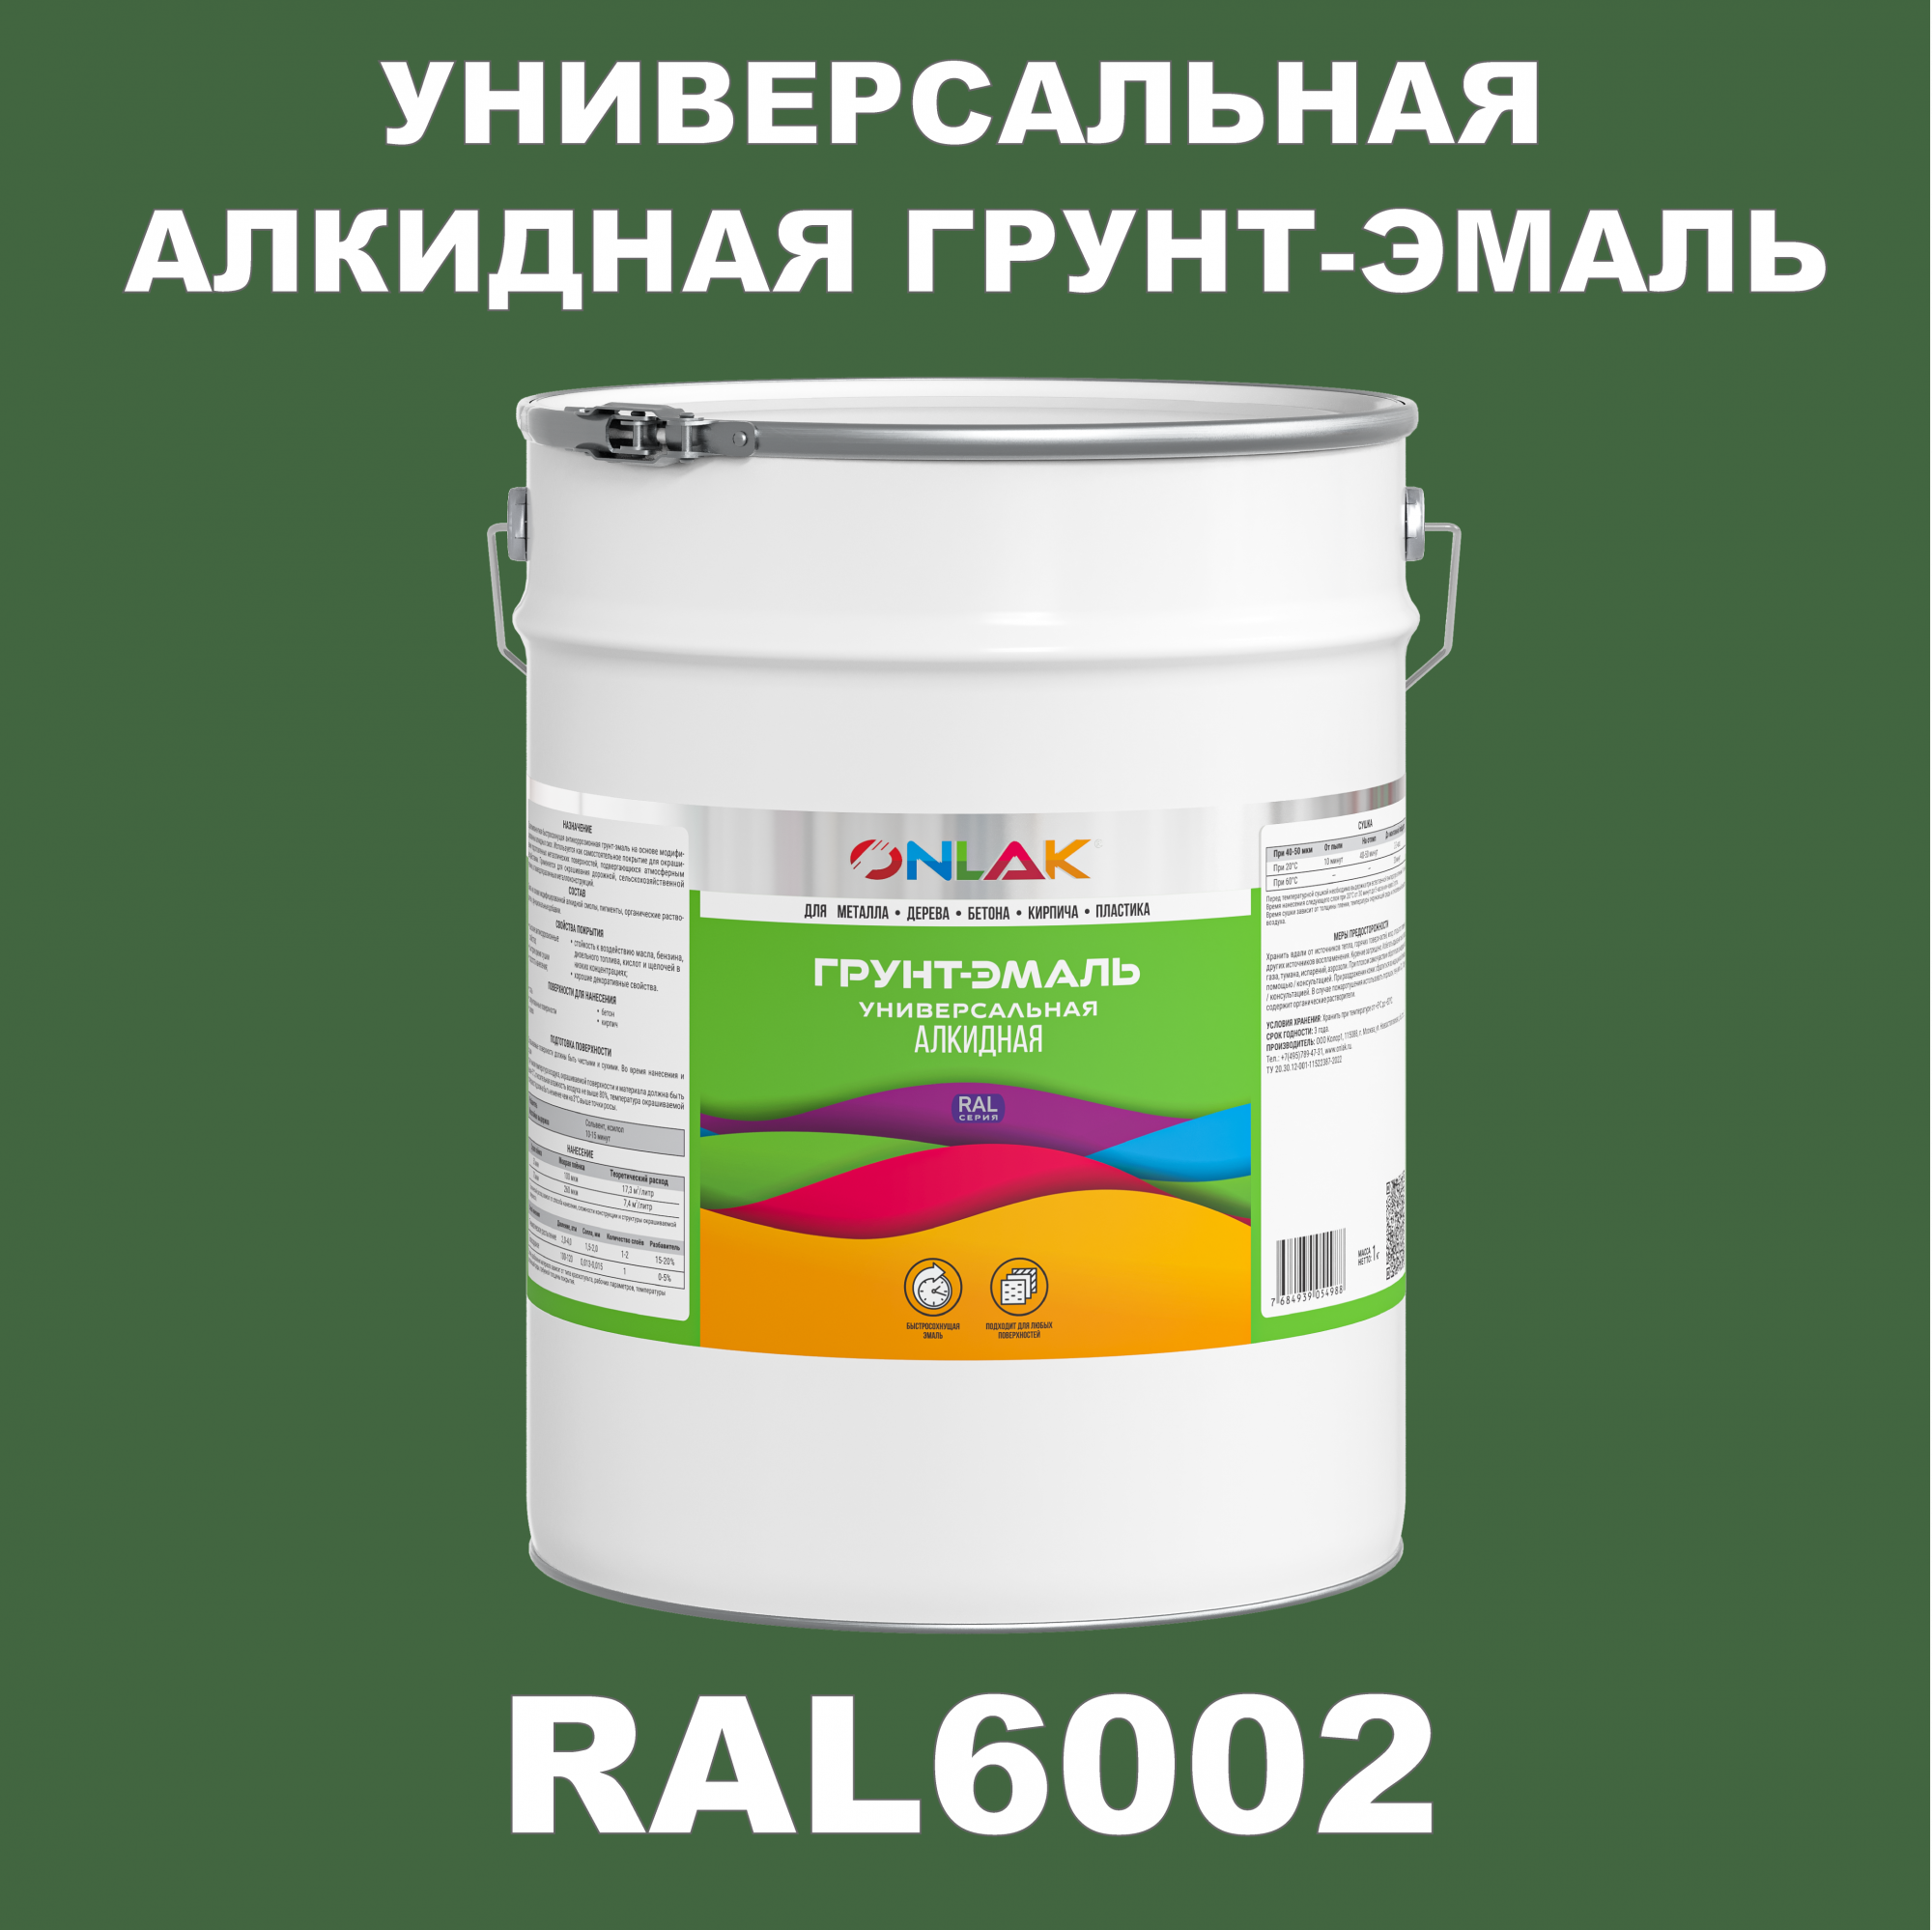 Грунт-эмаль ONLAK 1К RAL6002 антикоррозионная алкидная по металлу по ржавчине 20 кг грунт эмаль рас по ржавчине алкидная синяя 0 9 кг